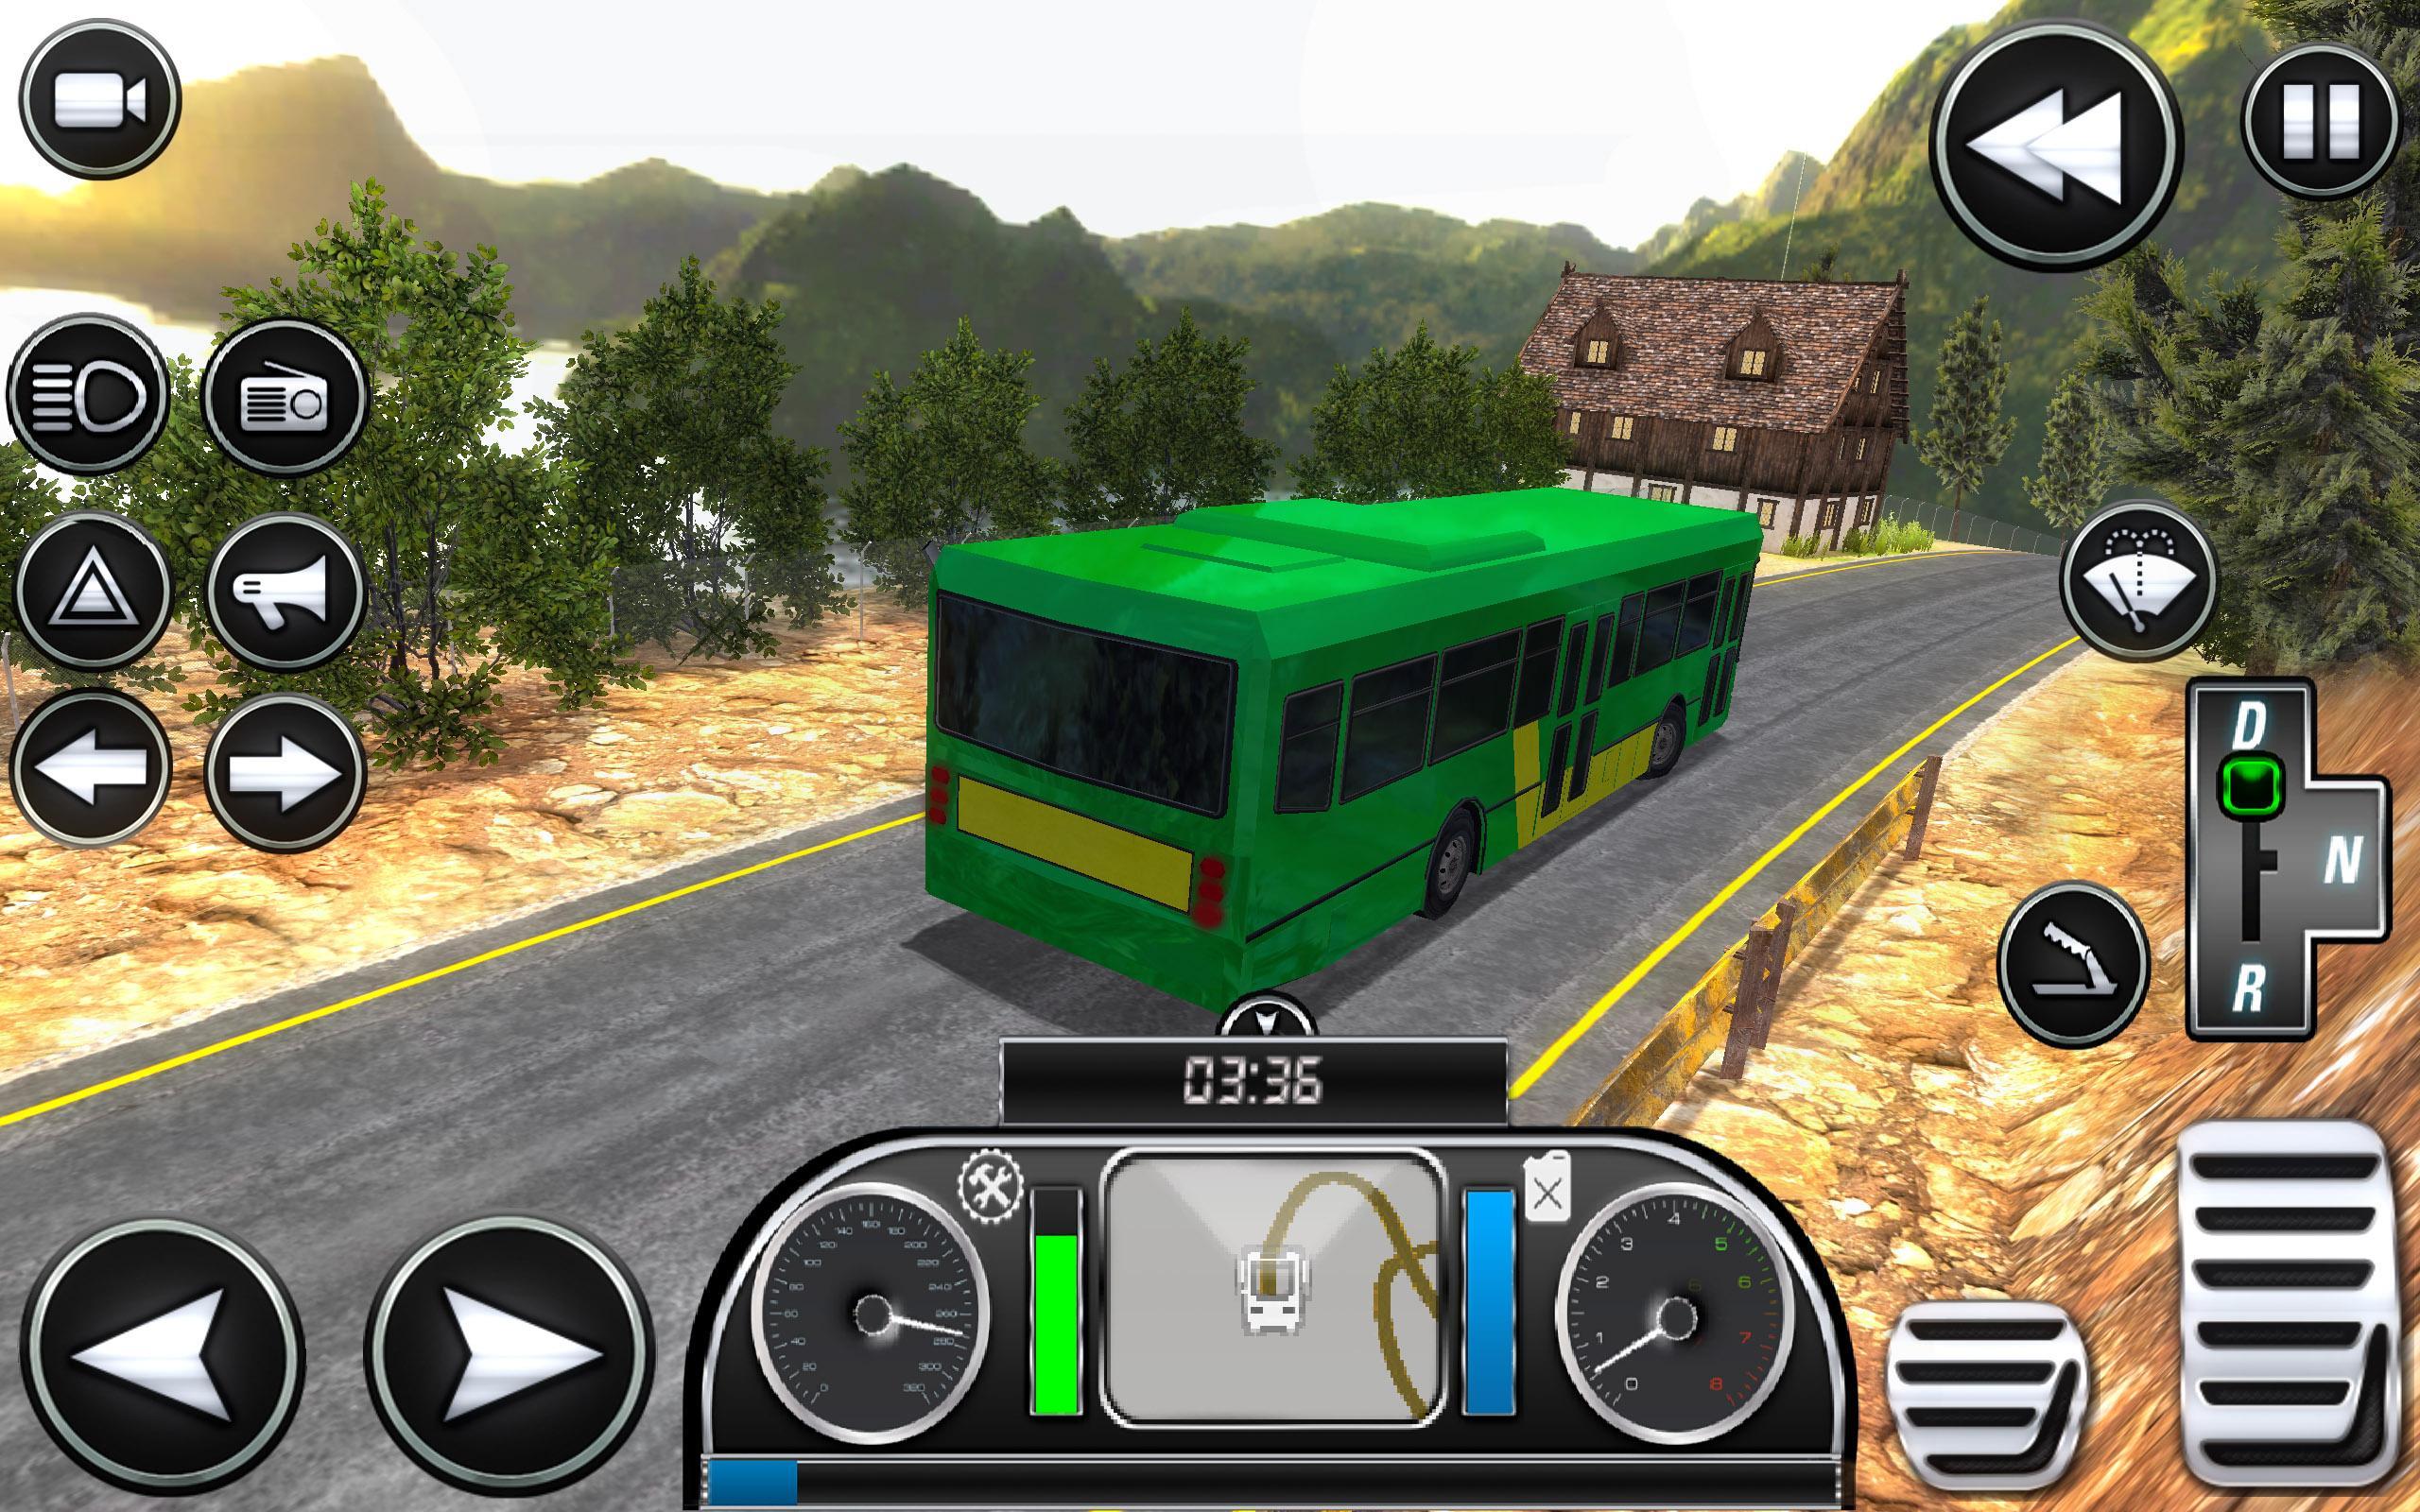 Автобус игра симулятор много денег. Симулятор автобуса на андроид. Топ симулятор автобуса. Номера в игре симулятор автобуса. Симуляторы автобусов на андроид с игрой по сети.